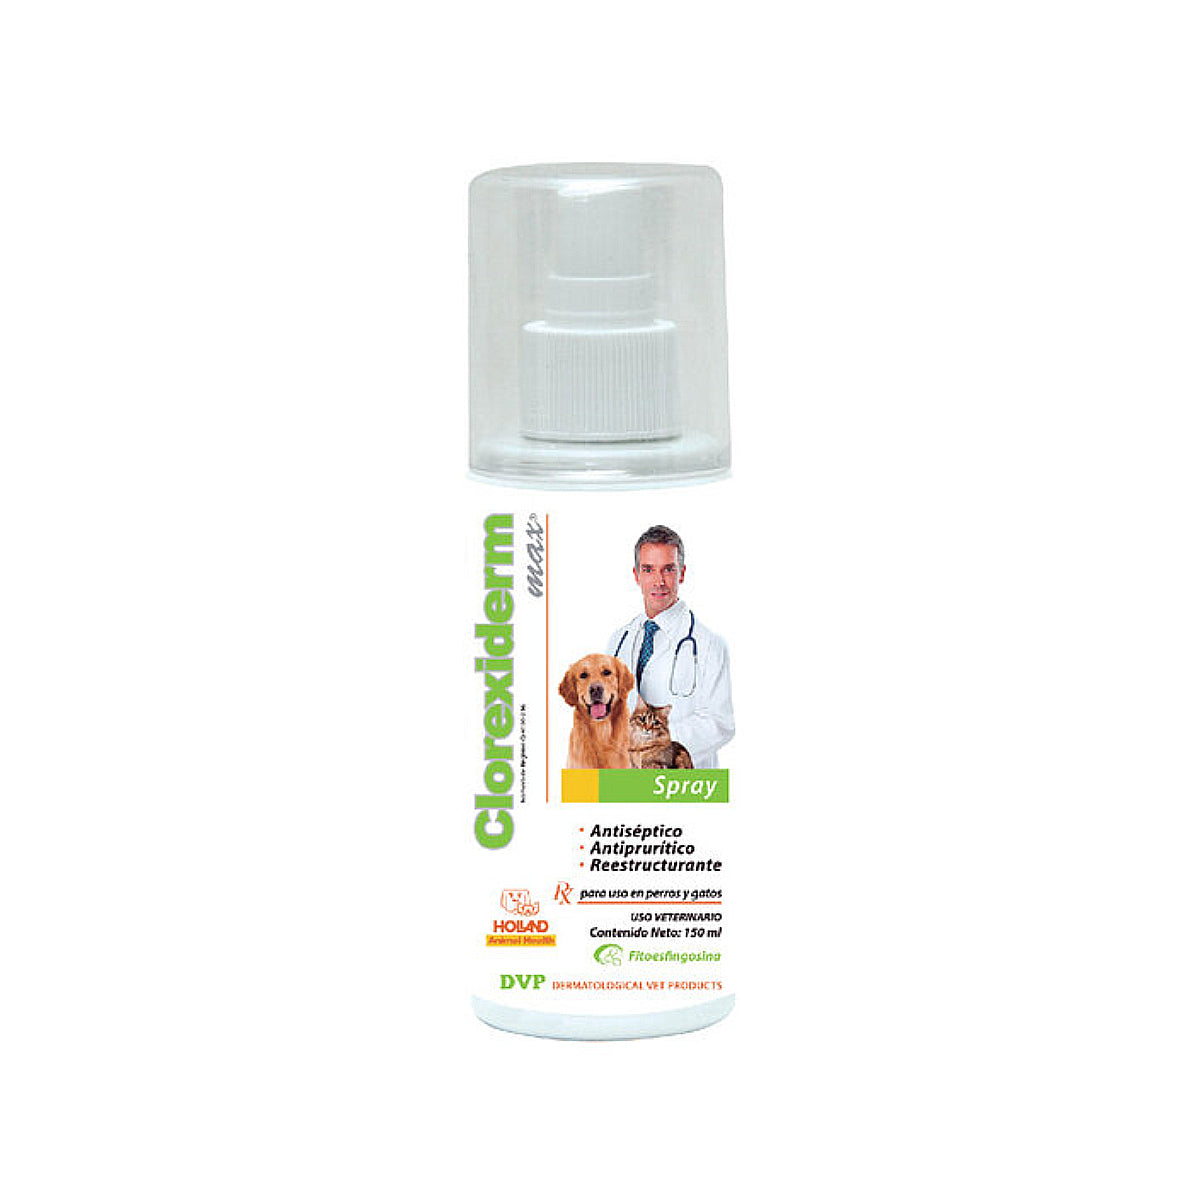 Spray Clorexiderm MAX Antiséptico y antibacteriano Holland 20 ml